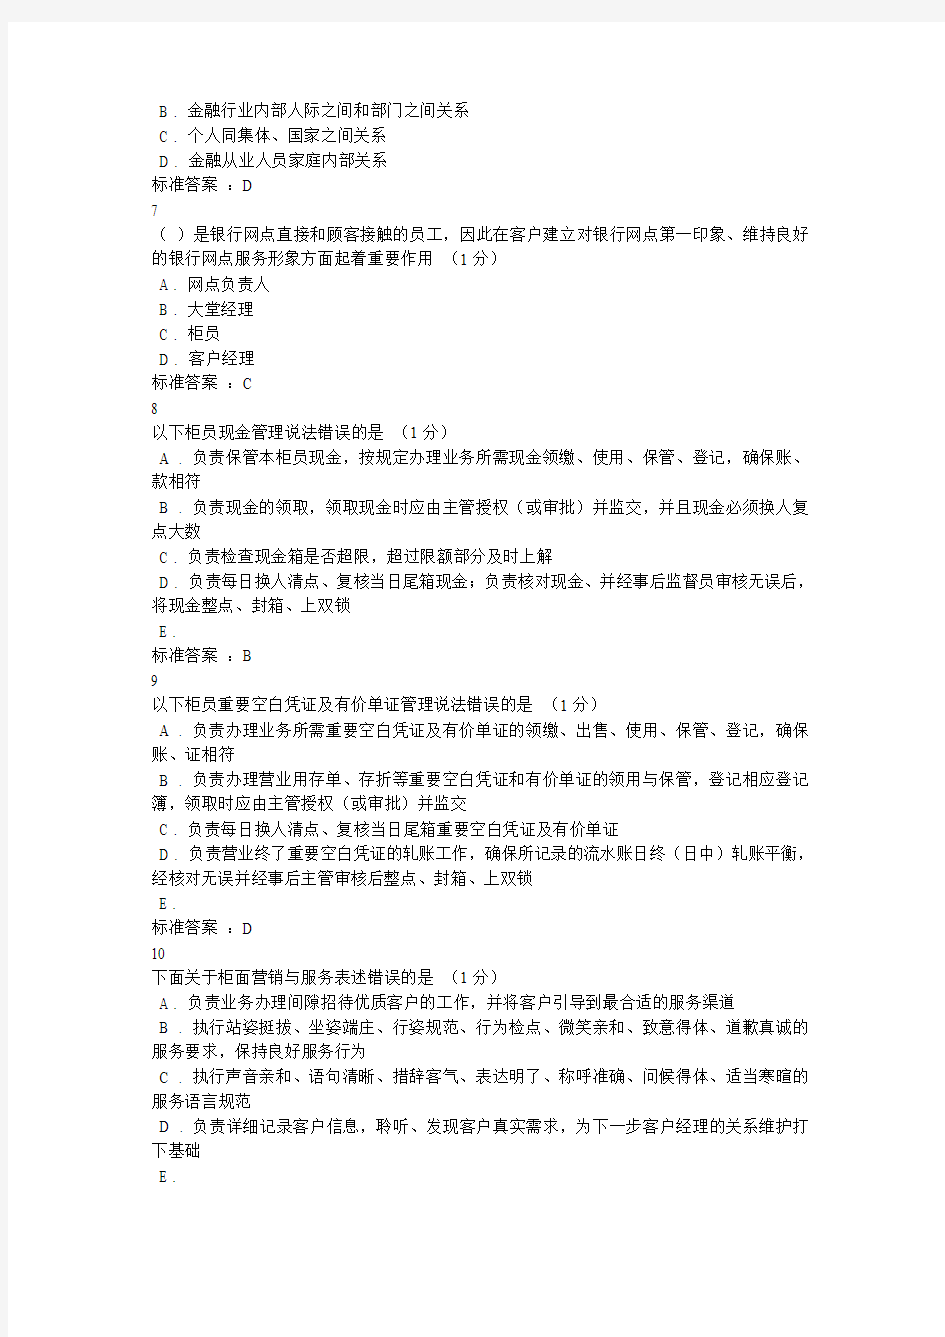 广东农信在线综合柜员网点负责人练习题答案